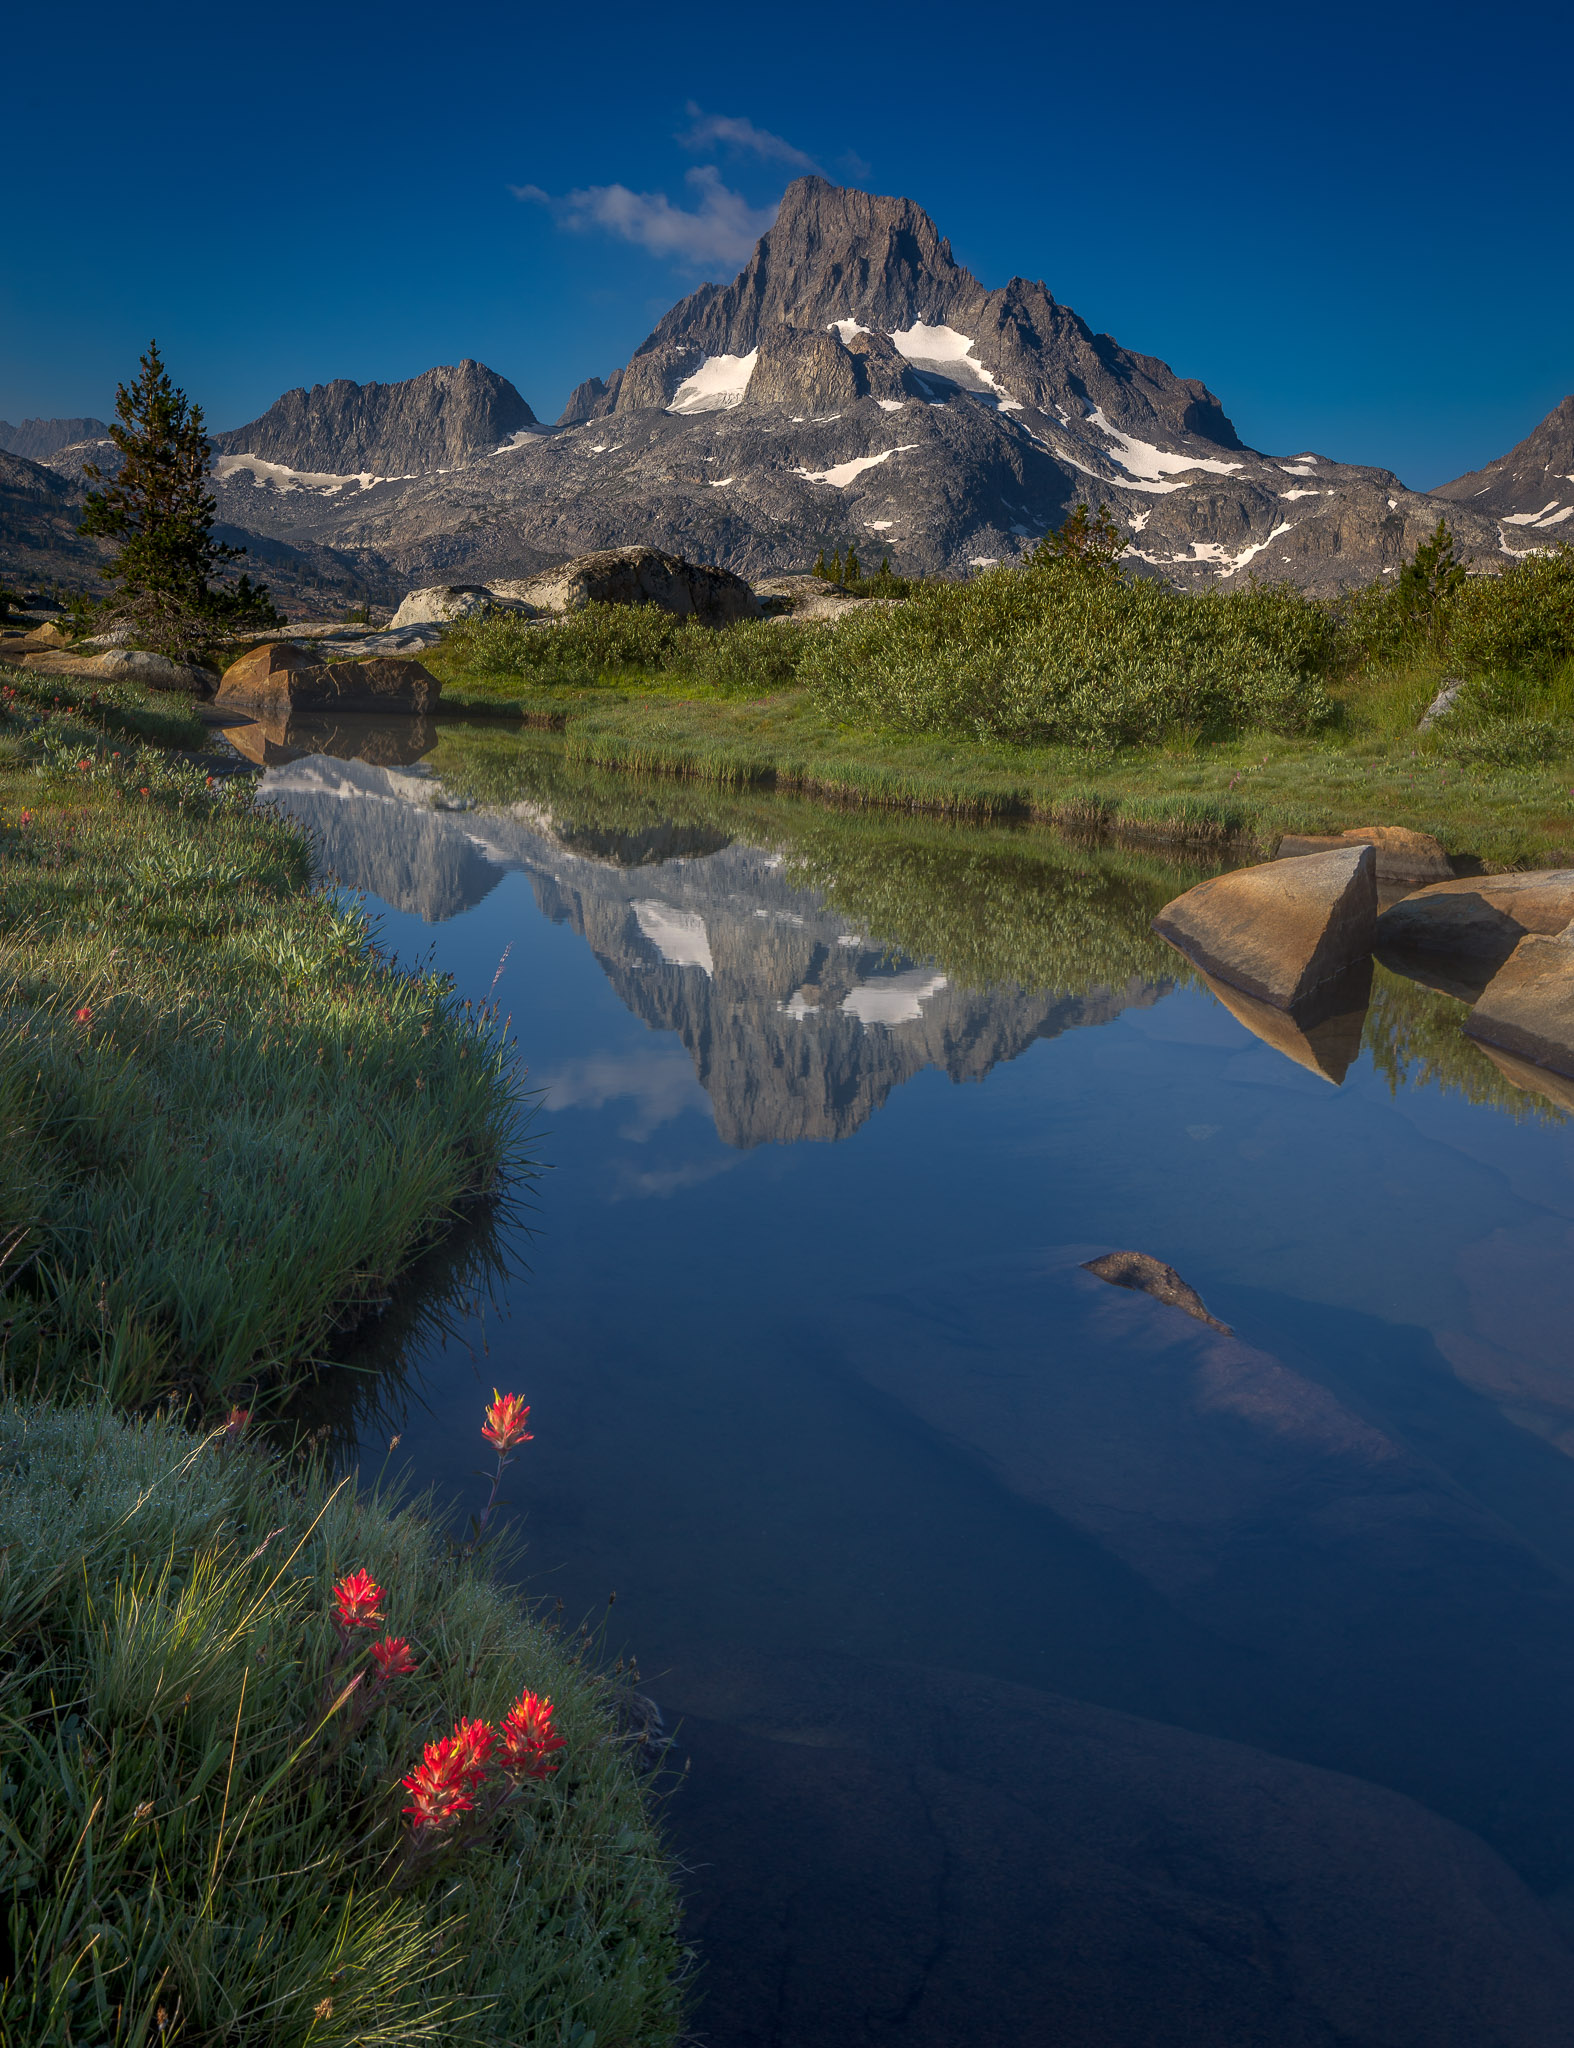 Wildflowers & Banner Peak from Thousand Island Lake (24mm tilt-shift lens)